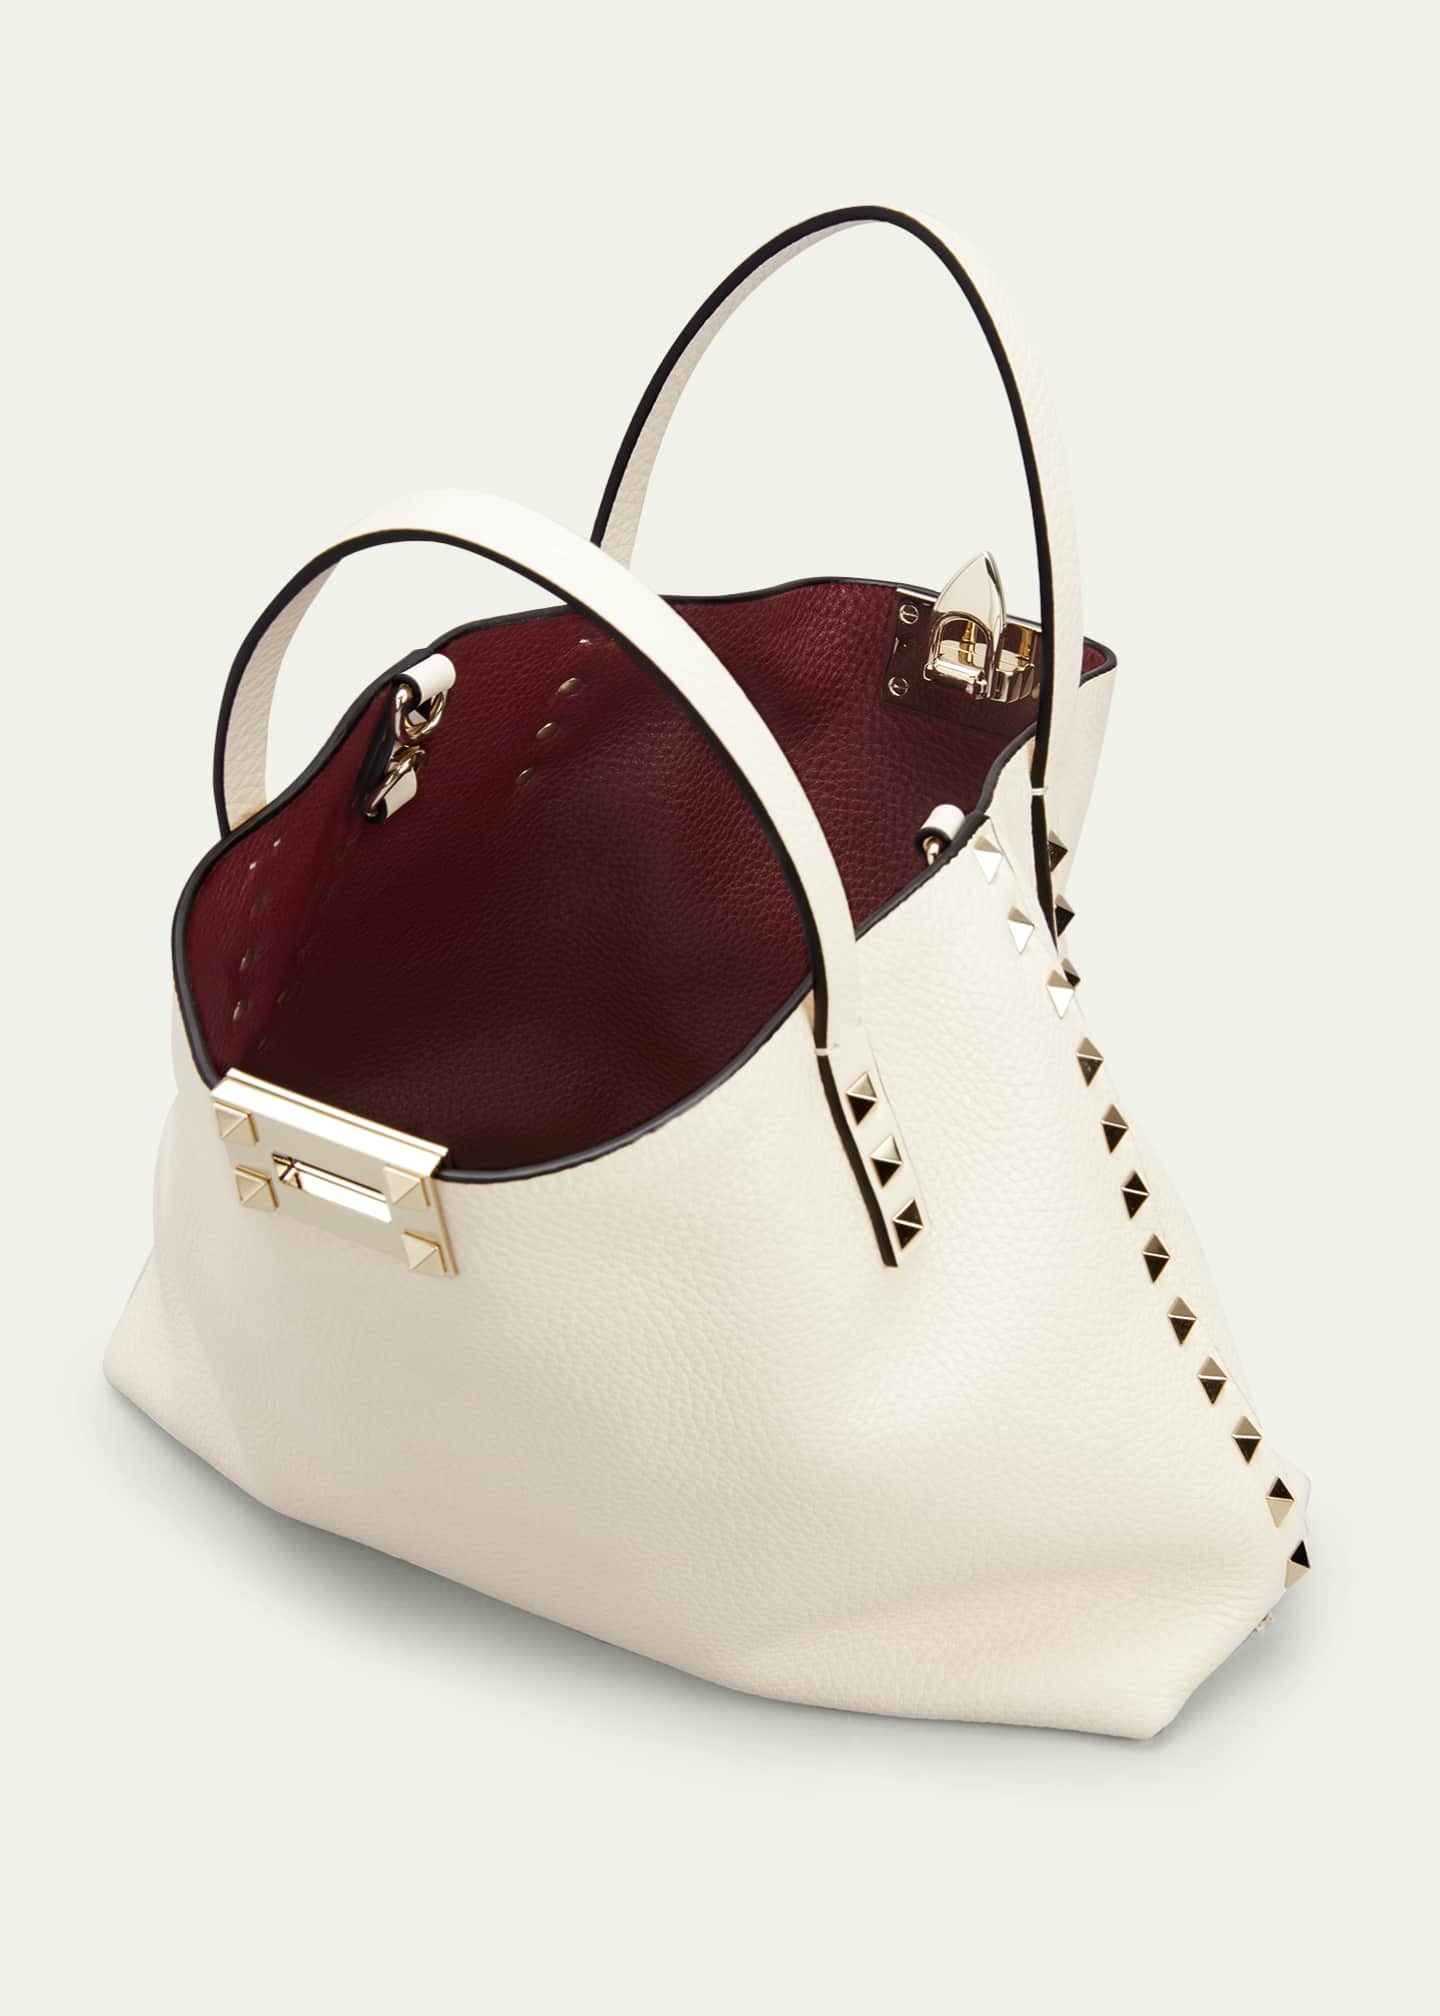 Valentino Garavani Rockstud Calfskin Handbag